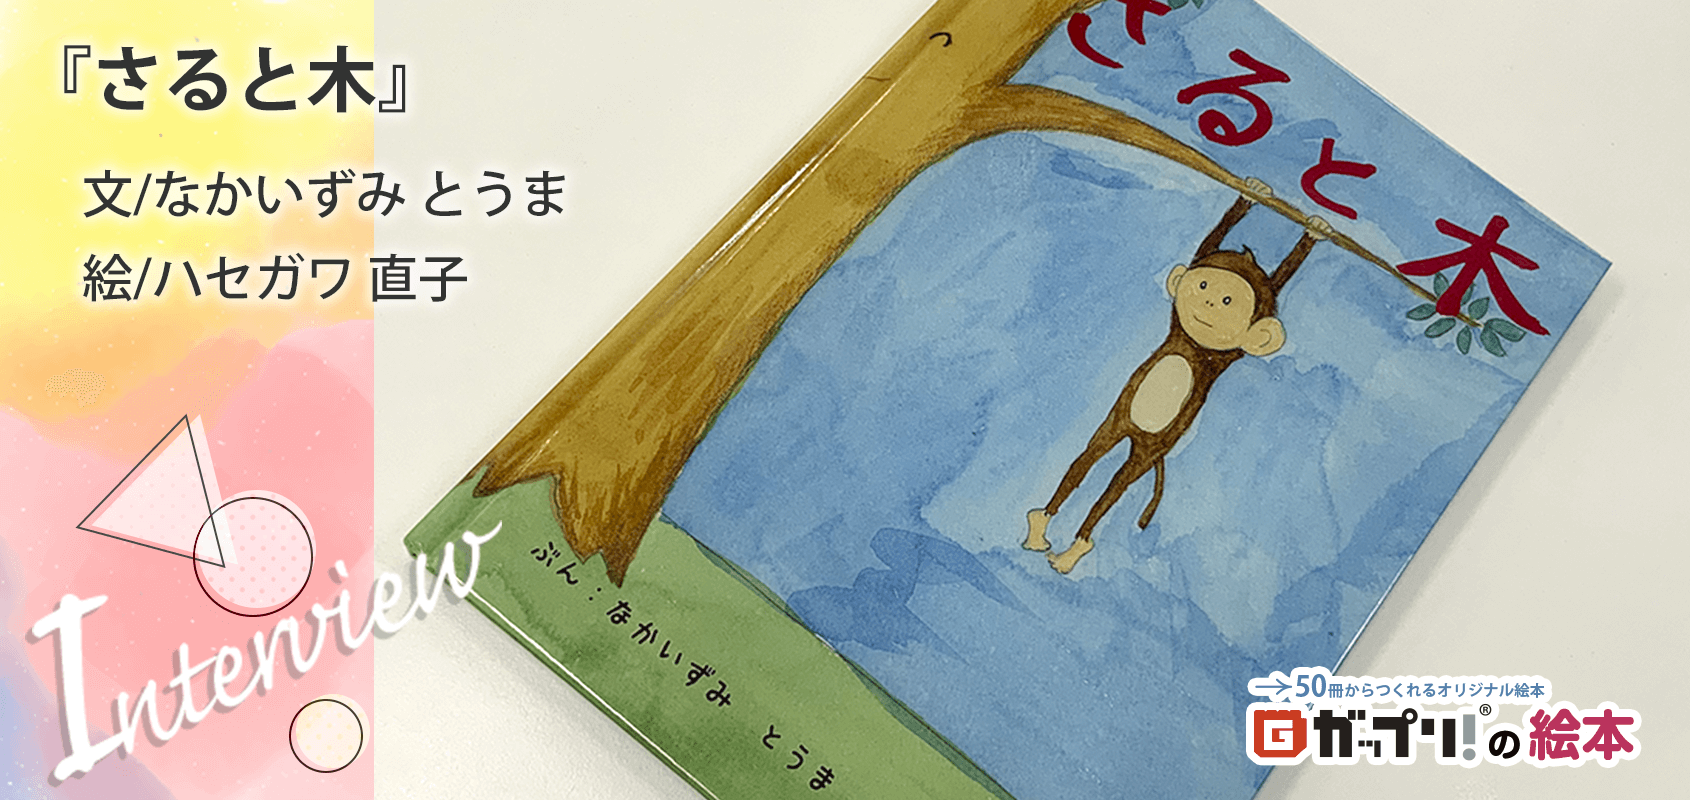 絵本作家をめざす小学生のデビュー作のオリジナル絵本『さると木』